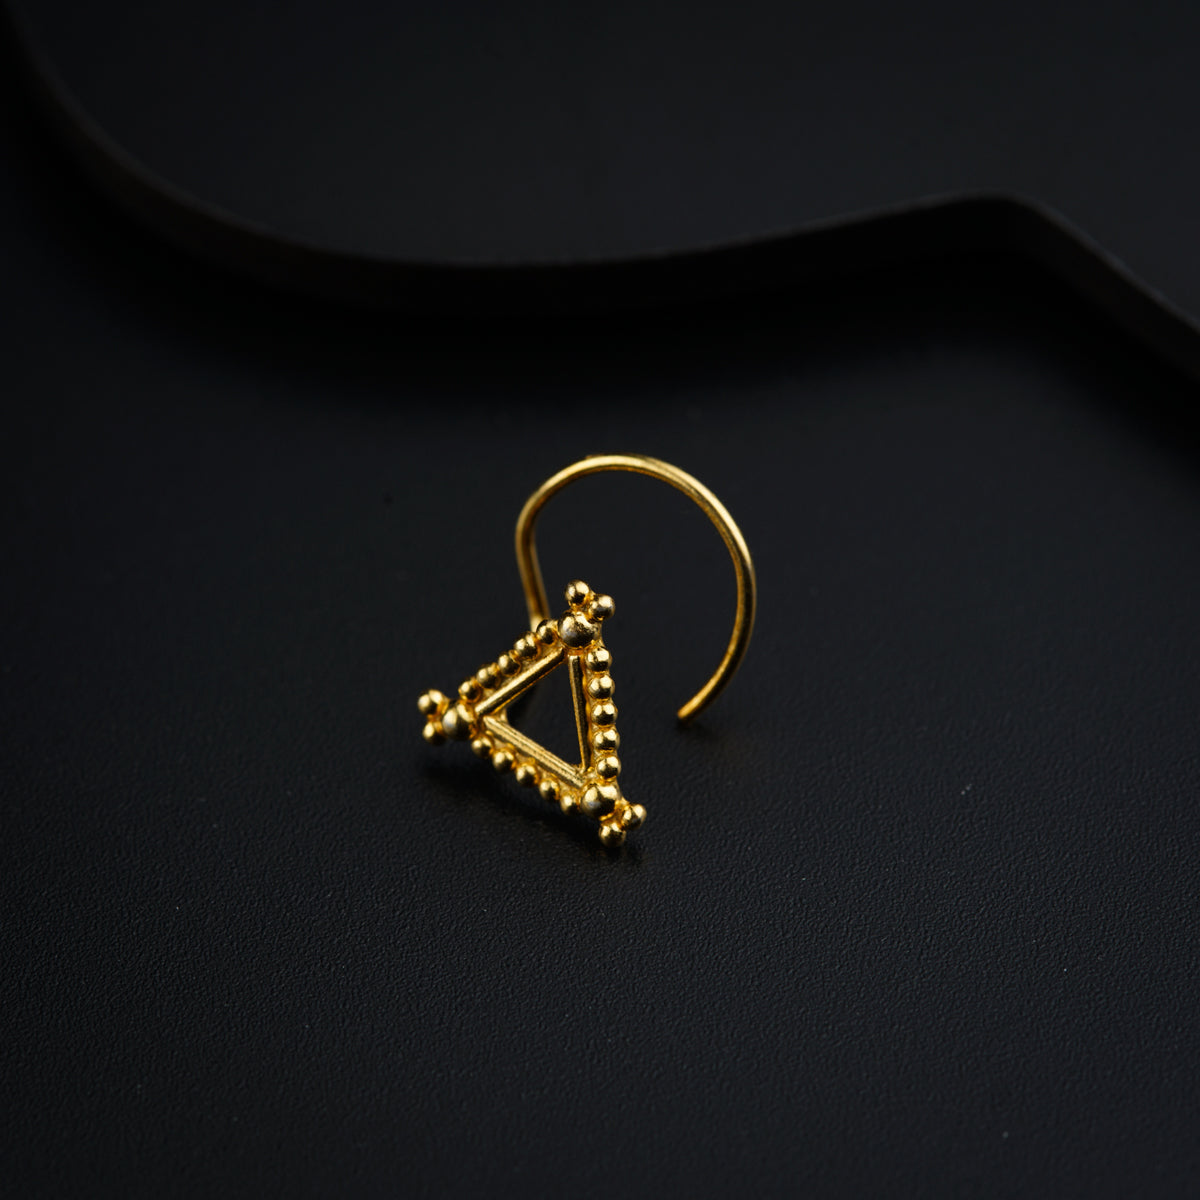 Kimaya Nose pin- Gold Plated, Pierced